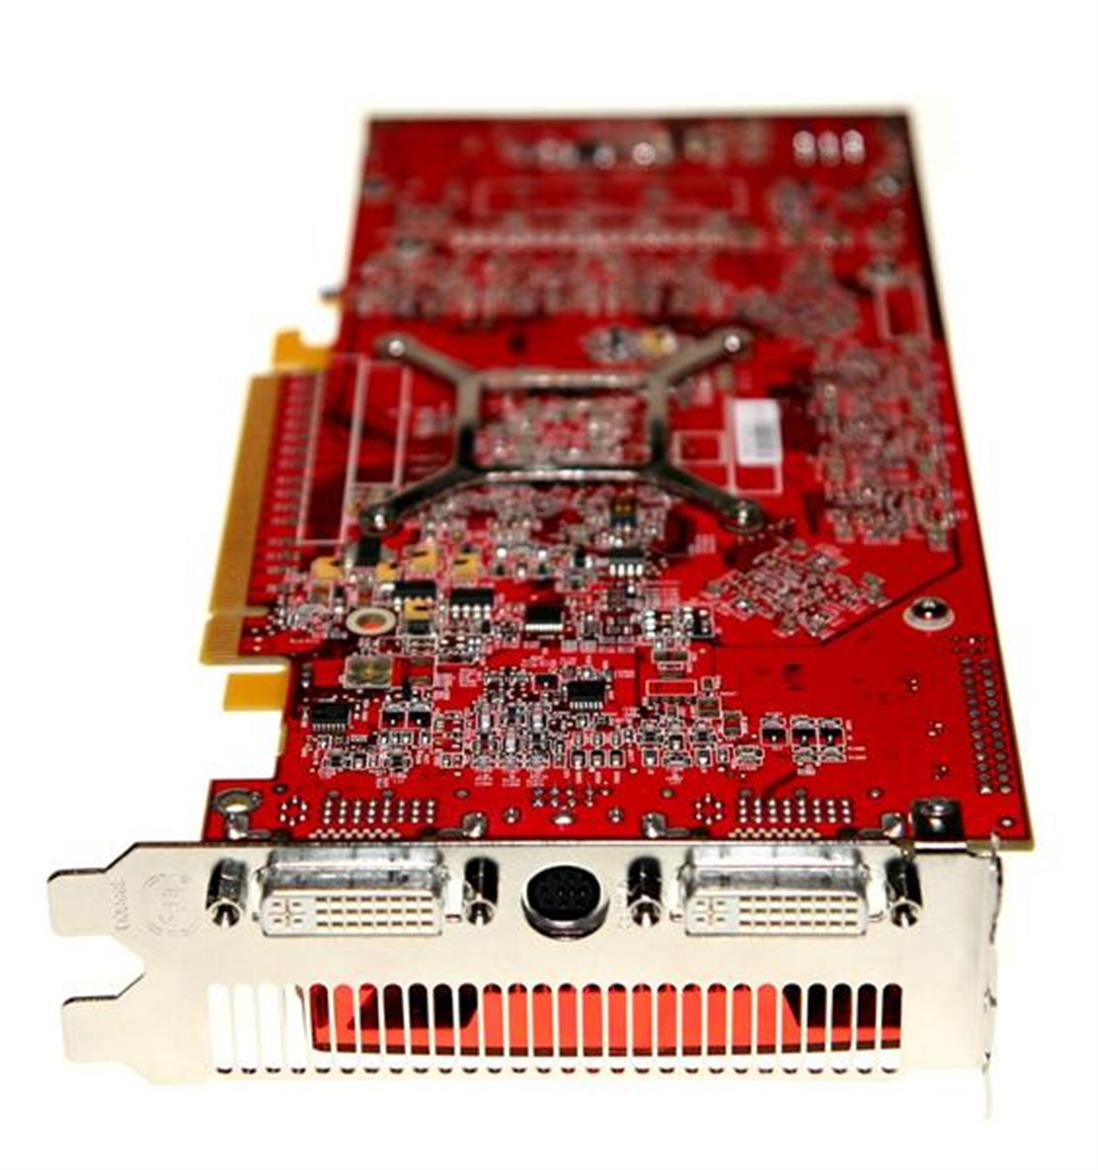 ATI Radeon X1K Refresh: X1950 XTX, X1900 XT 256MB, X1650 Pro, and X1300 XT